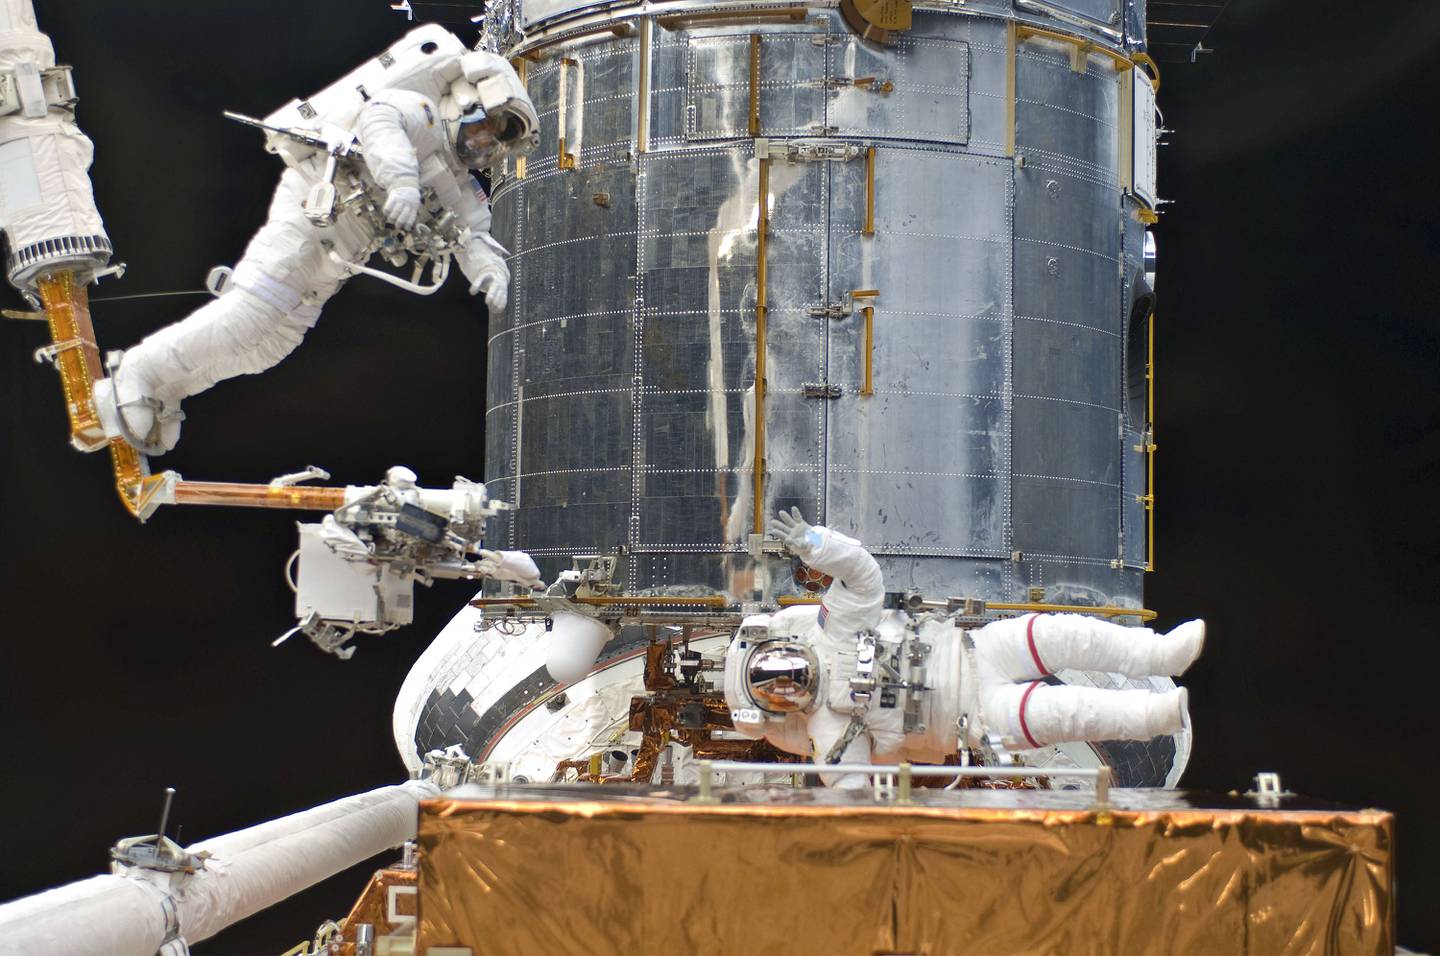 Los astronautas del transbordador espacial estadounidense Atlantis reparan y mejoran el telescopio espacial Hubble en 2009.Fuente: NASA.dfd